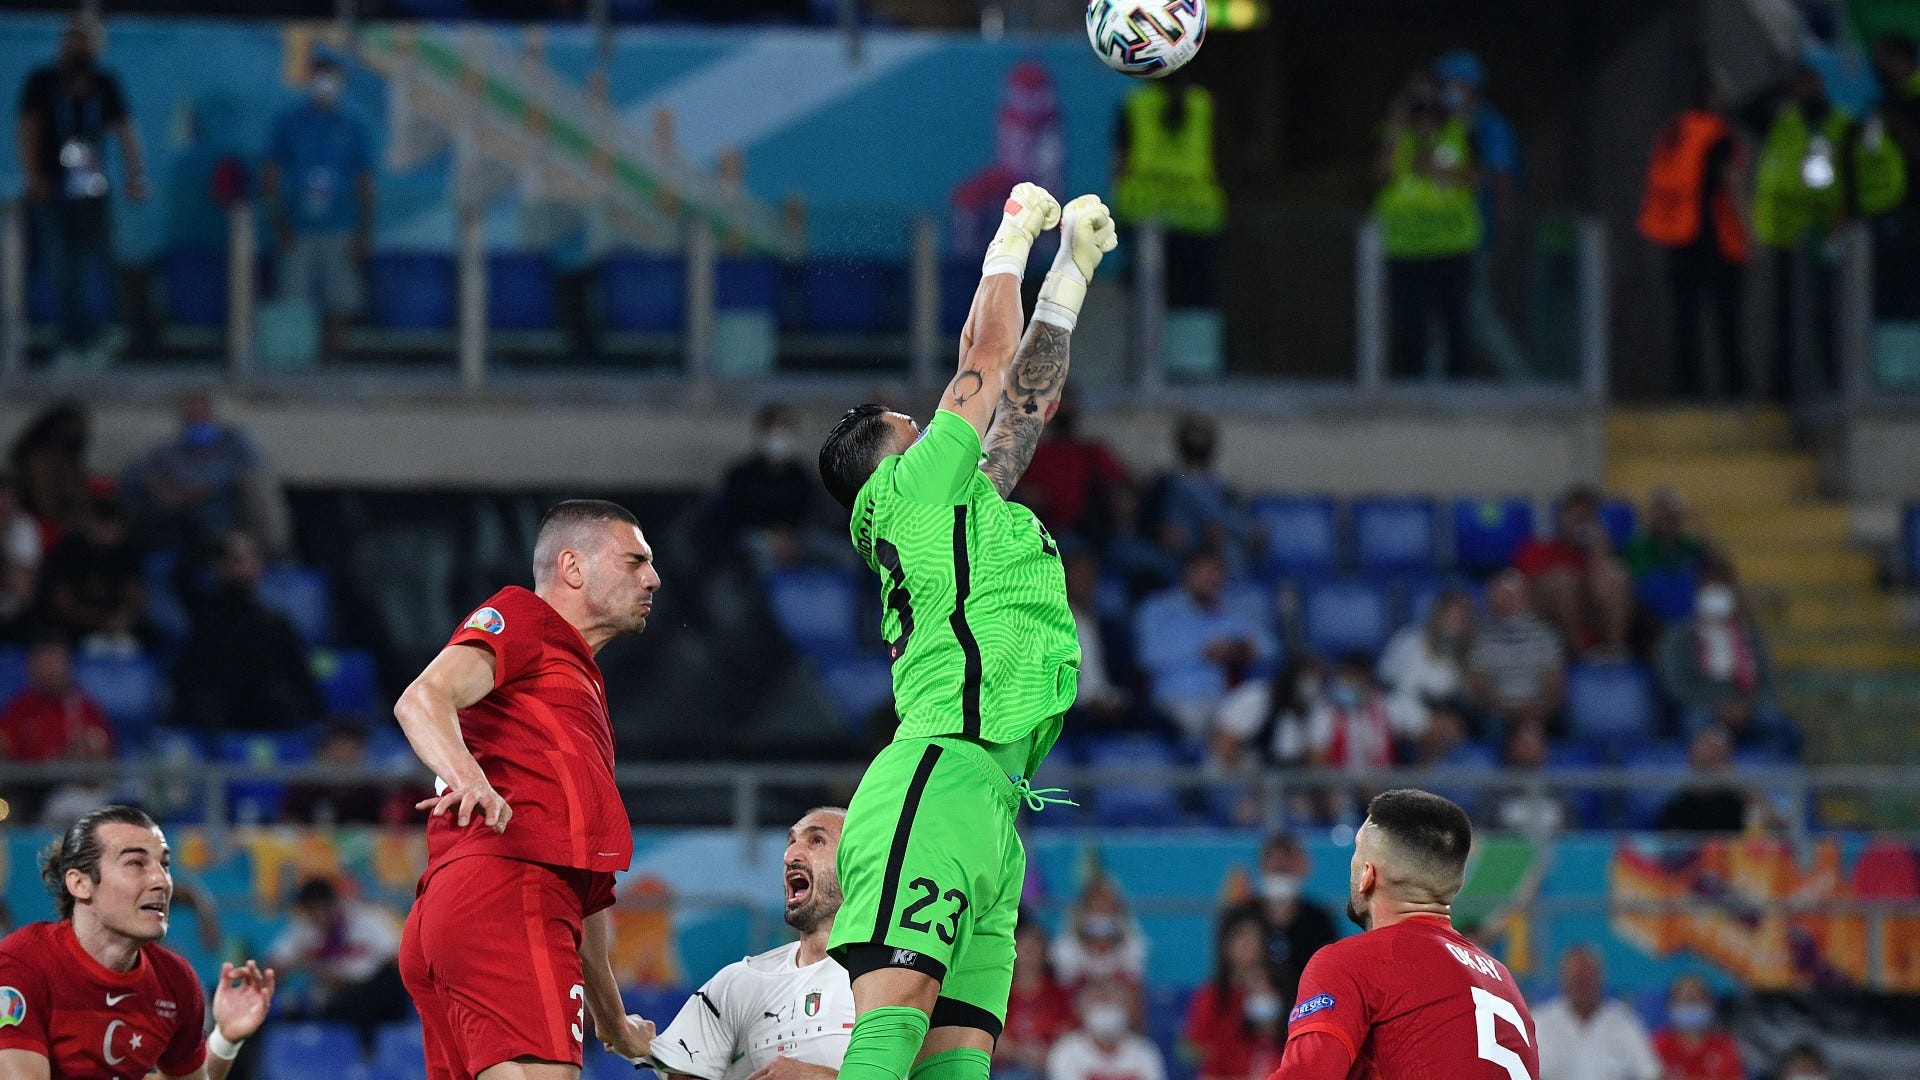 KẾT QUẢ Thổ Nhĩ Kỳ 0-3 Italia: Bùng nổ ngày khai màn